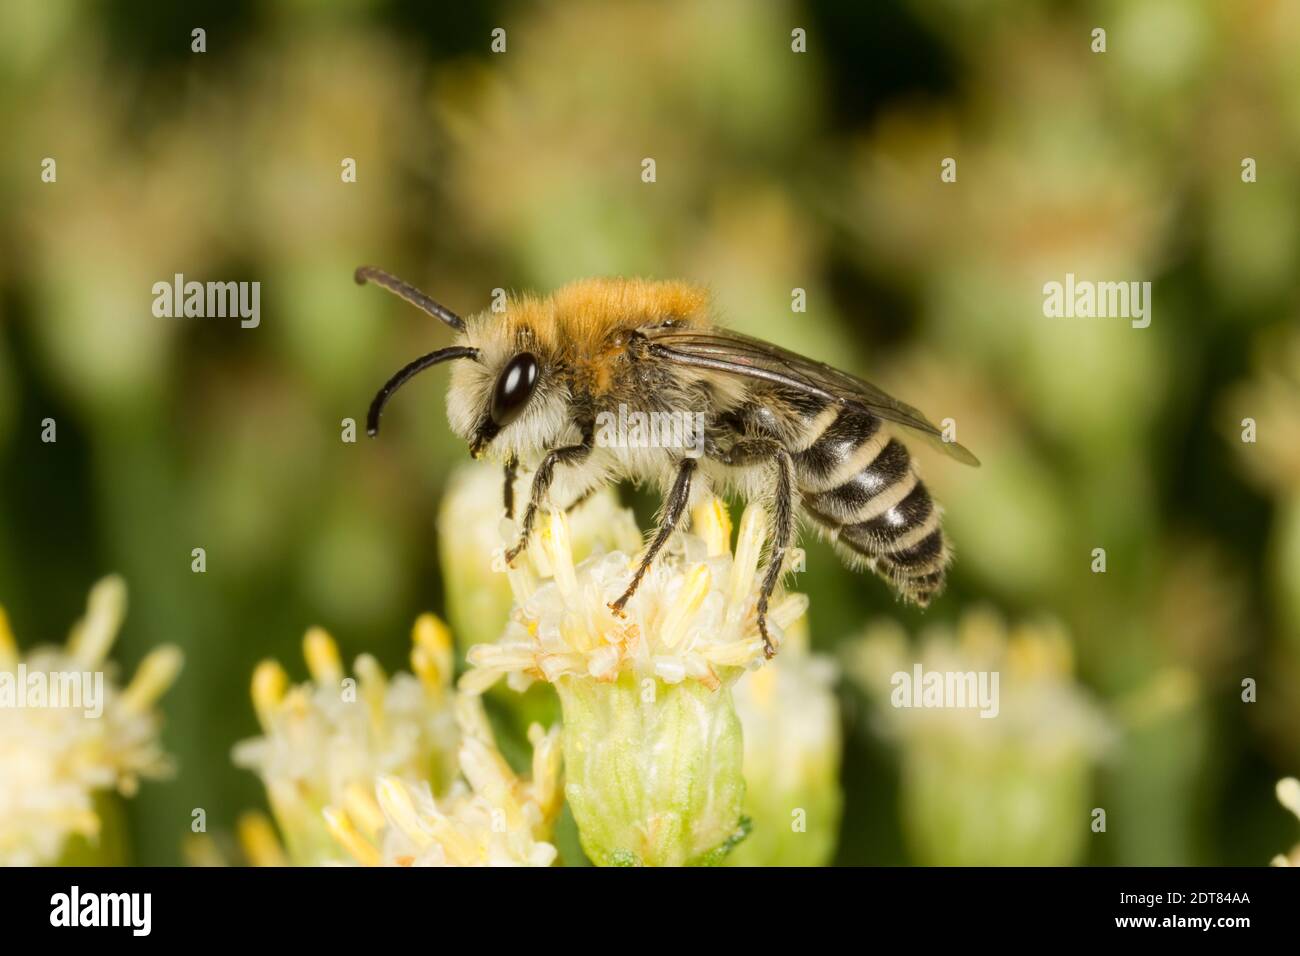 Bryant's Cellophane Bee männlich, Colletes bryanti, Colletidae. Gehäuselänge 8 mm. Nectaring bei Desert Broom, Baccharis sarothroides, Asteraceae. Stockfoto